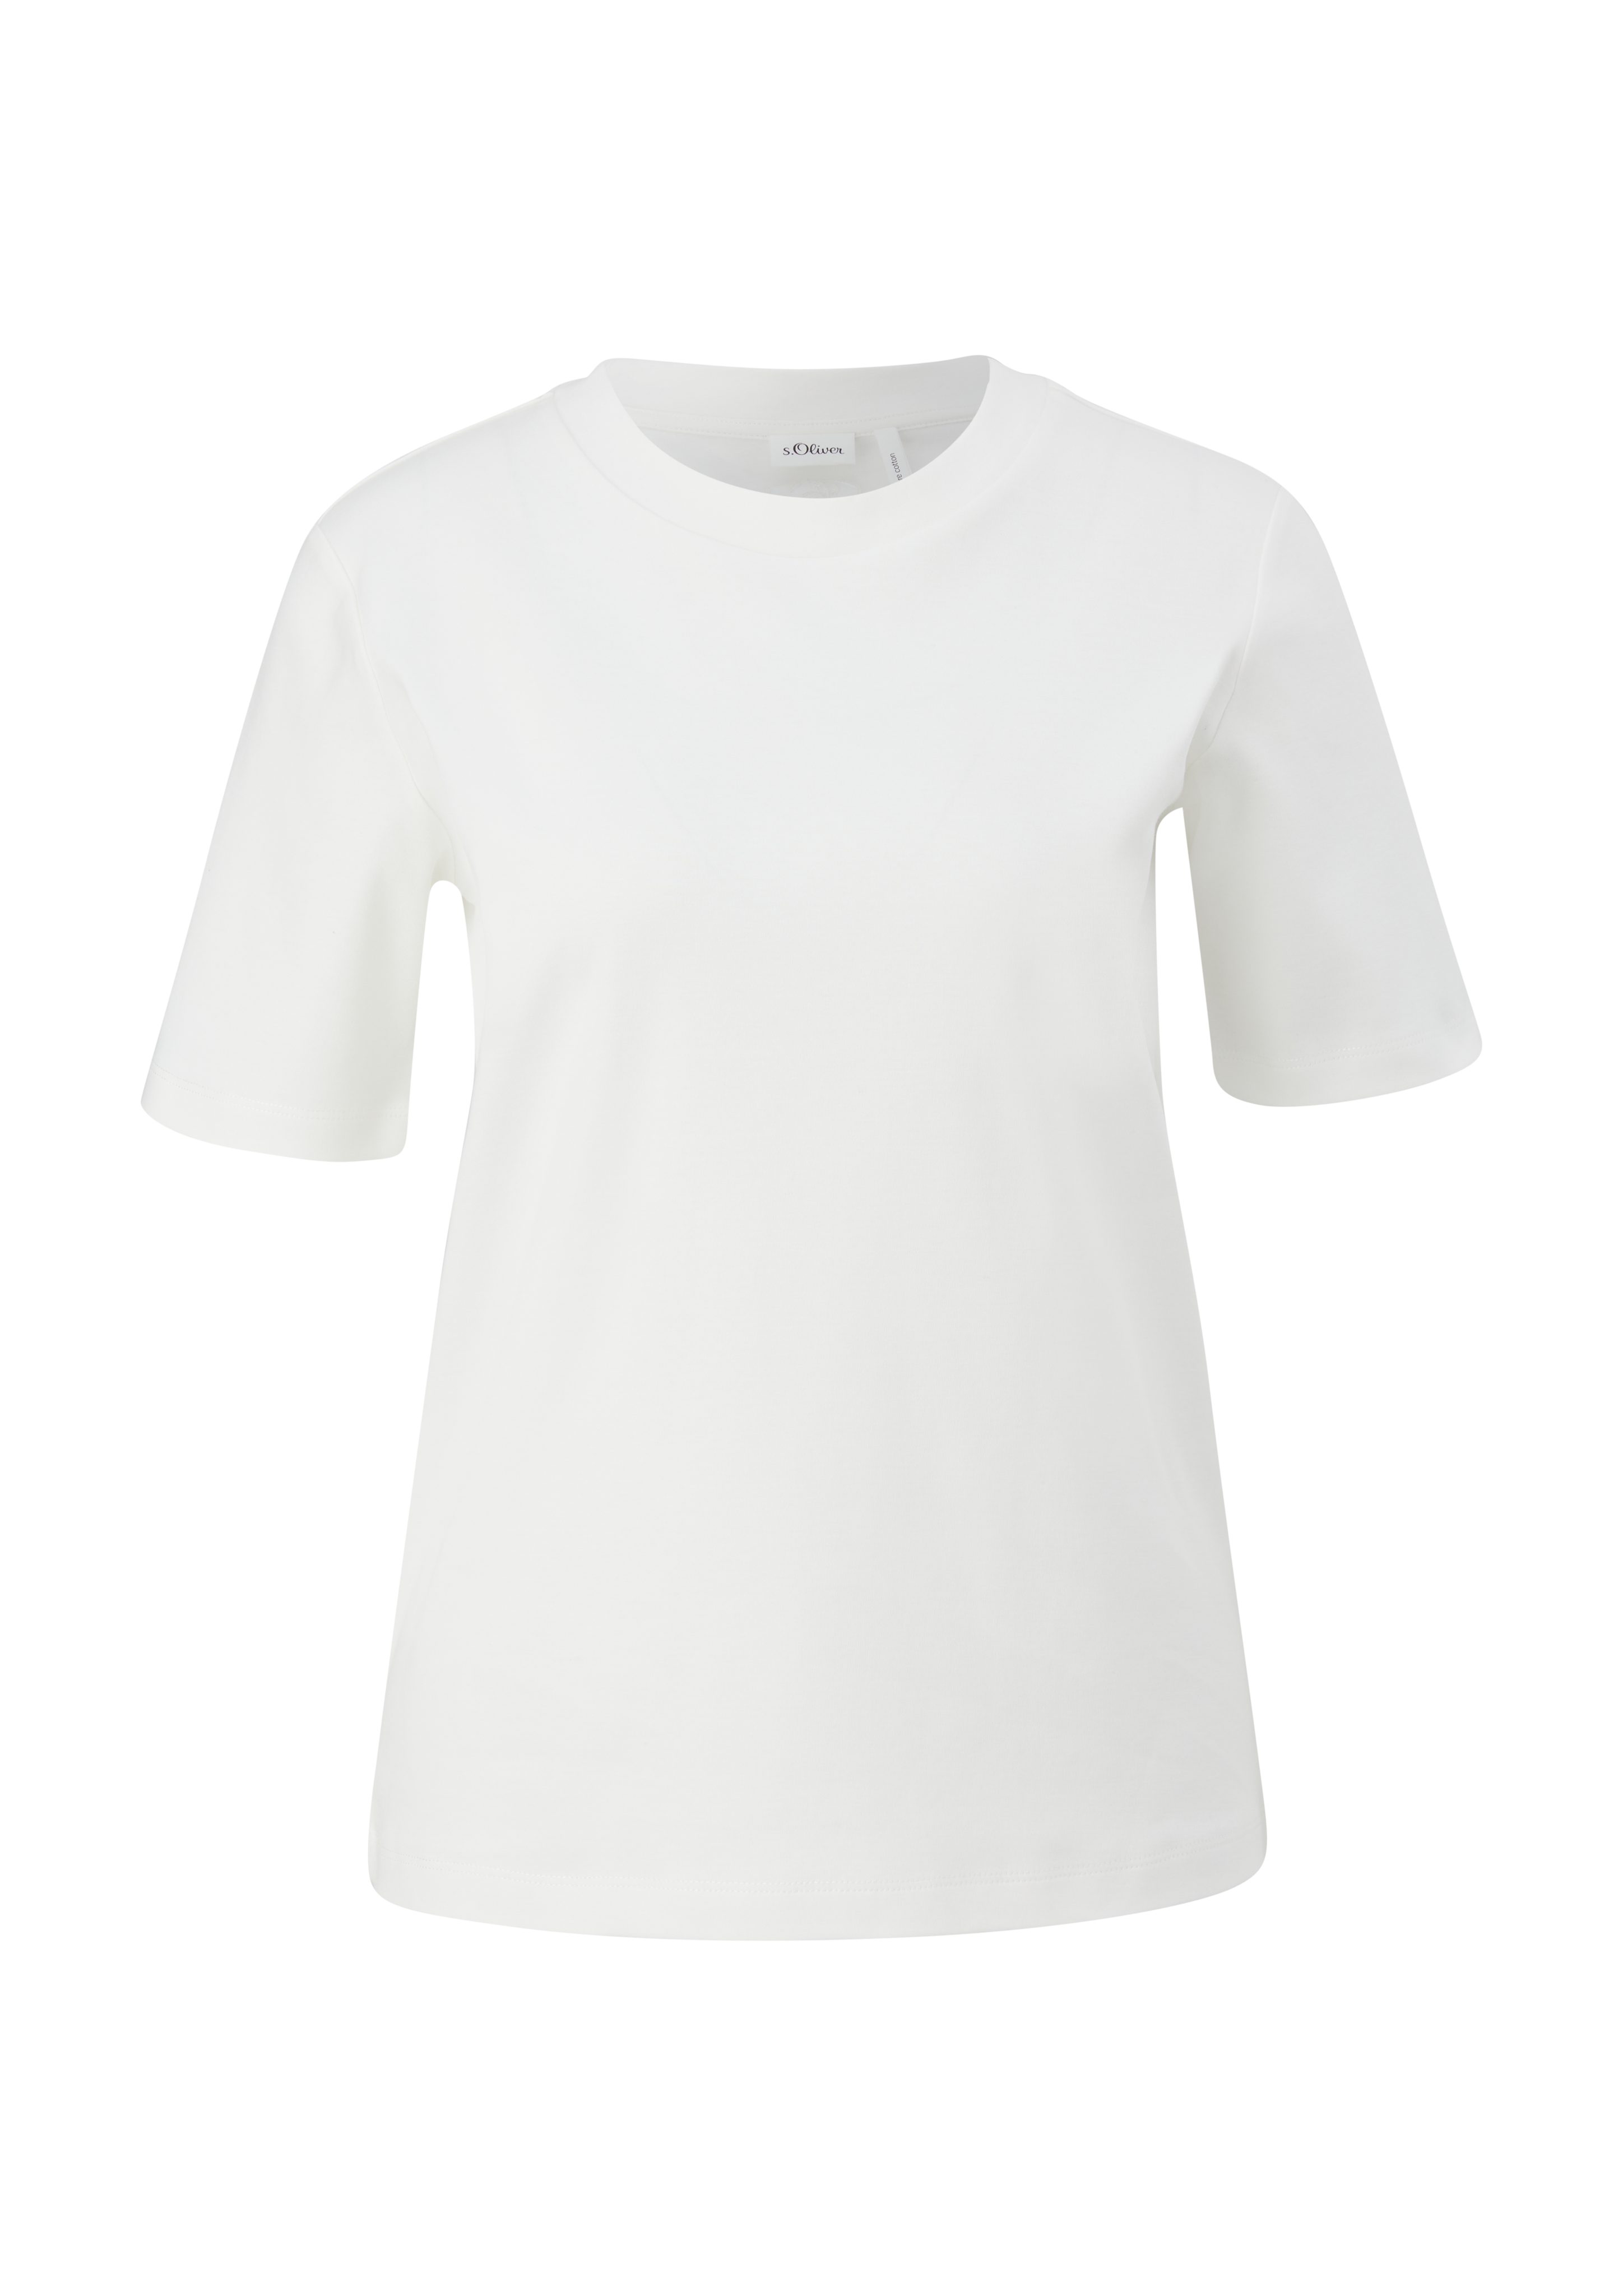 s.Oliver BLACK aus reiner ecru LABEL Stickerei Kurzarmshirt T-Shirt Baumwolle